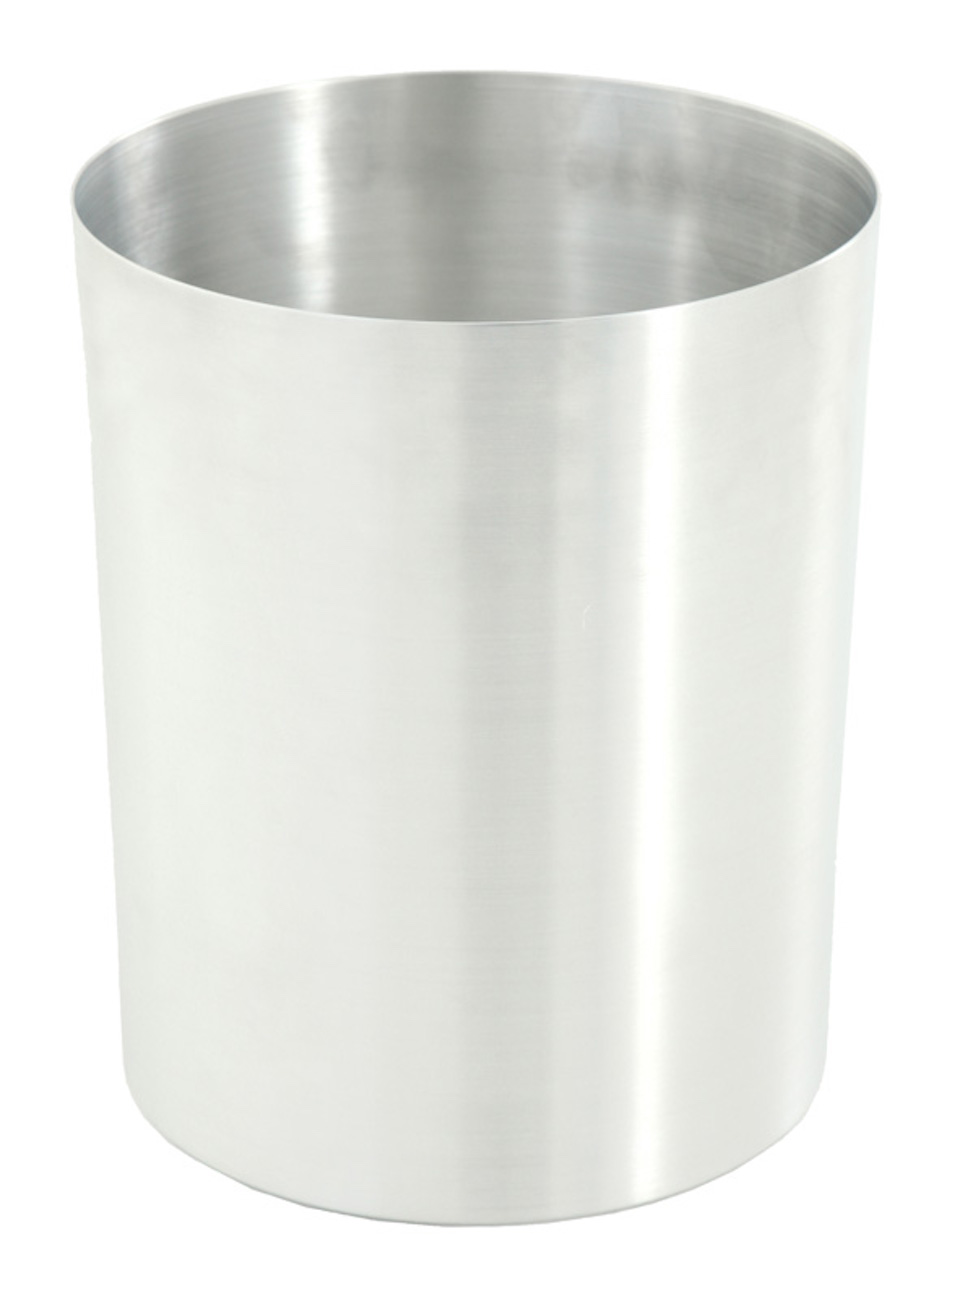 Feuerfester offener Papierkorb & Abfallsammler aus Aluminium | 13 Liter, HxØ 29,5x23,5cm | Silber